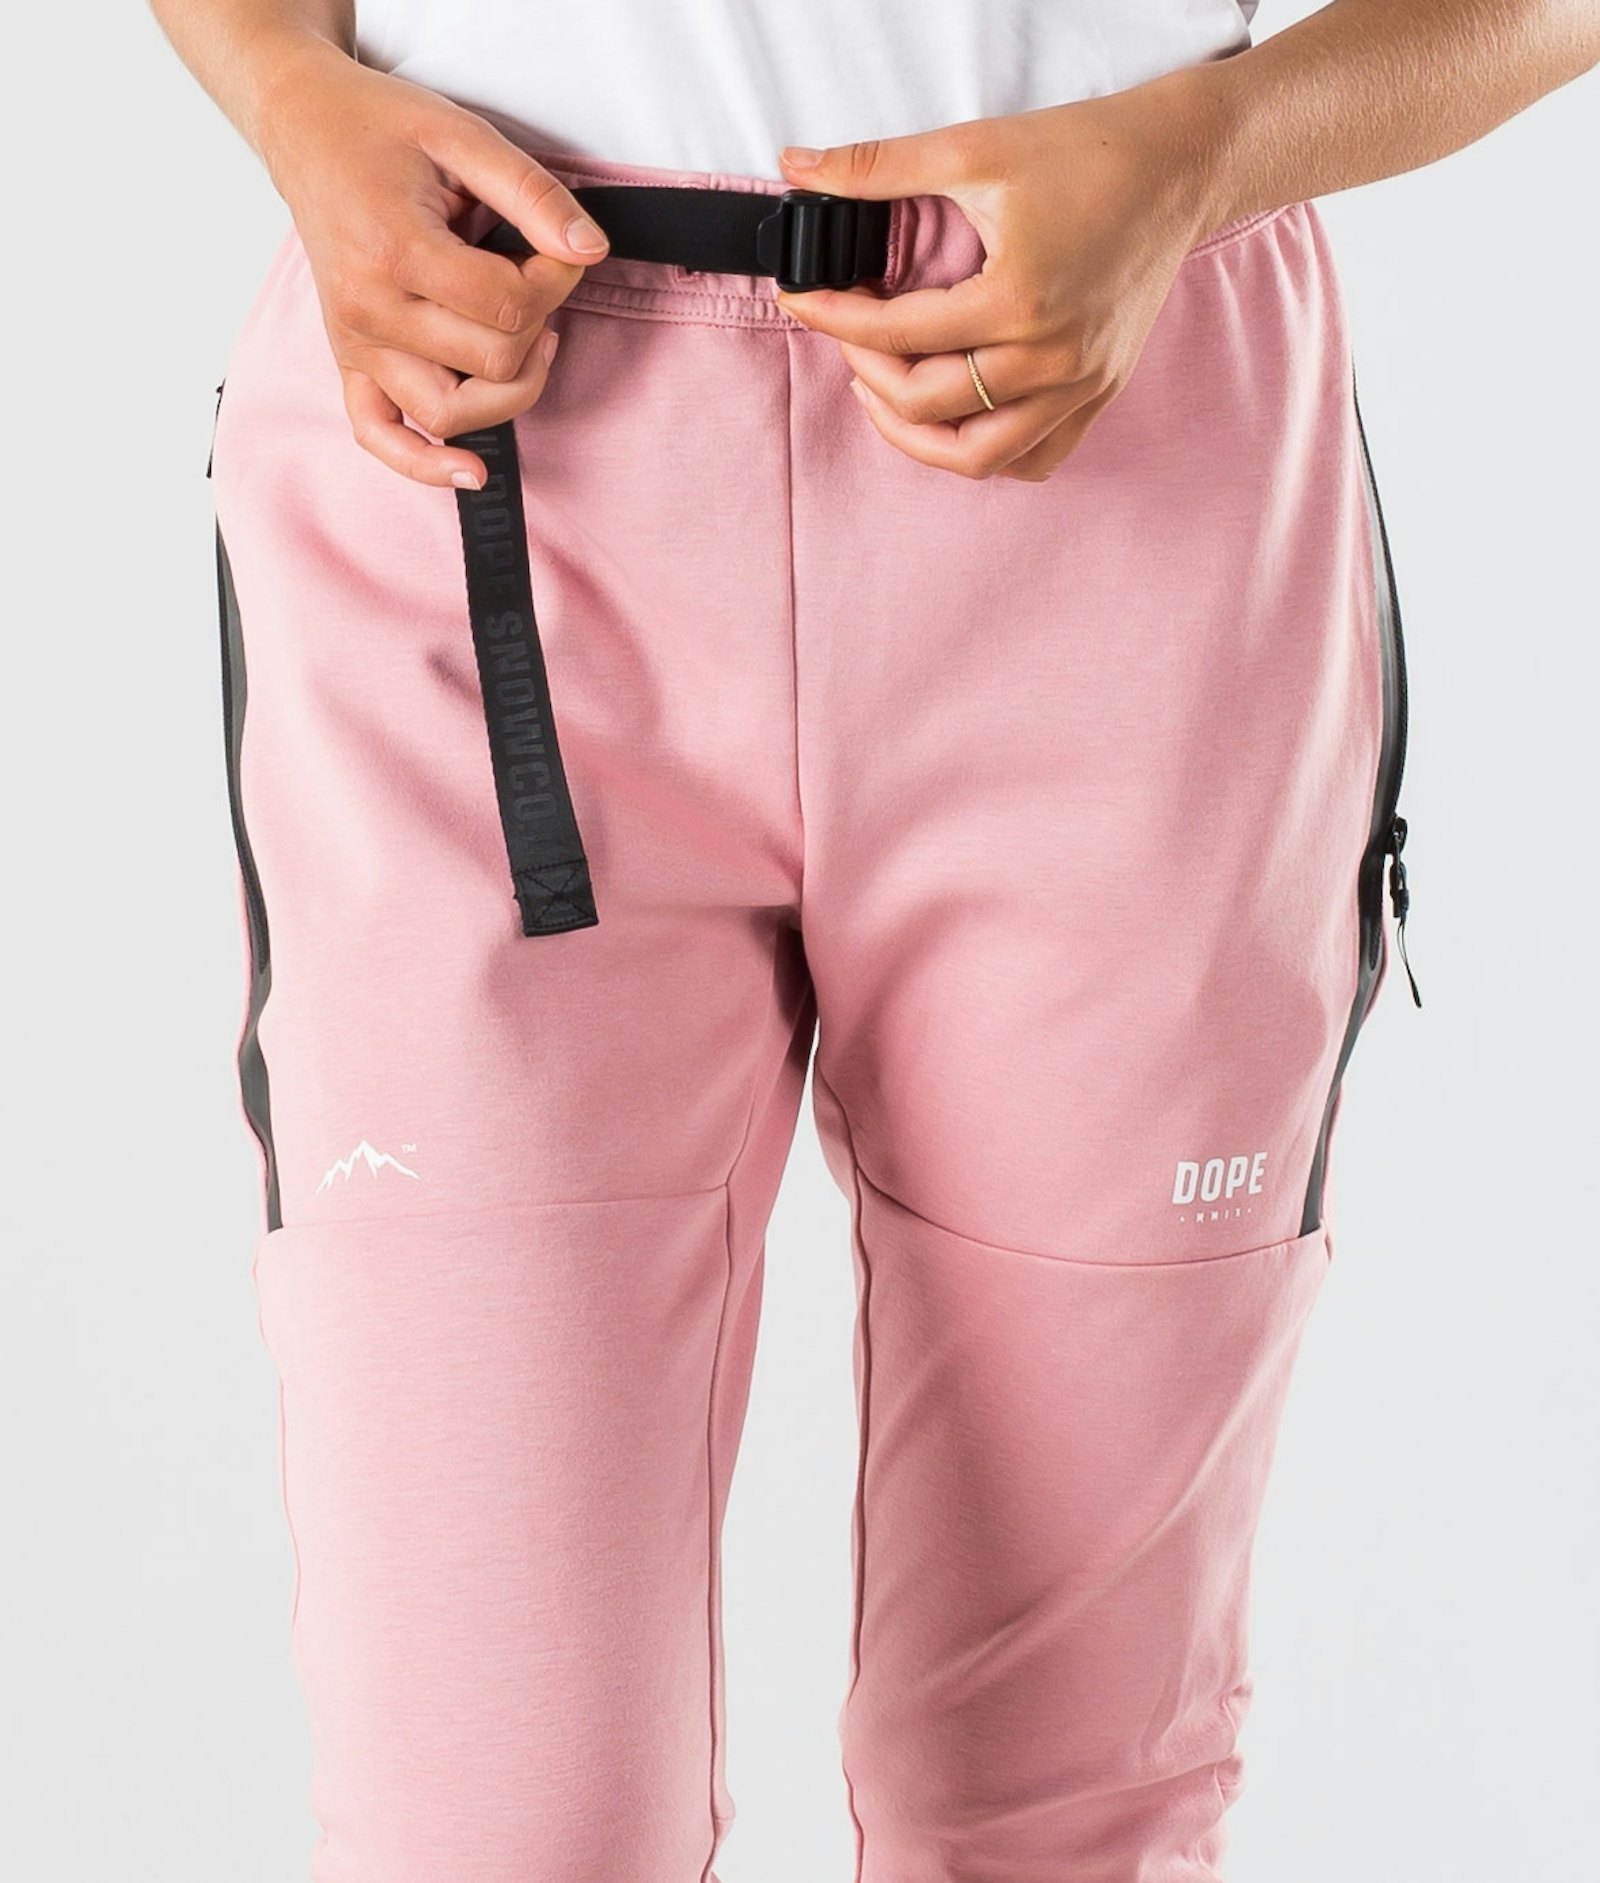 Ronin W Pants Women Pink, Image 4 of 5